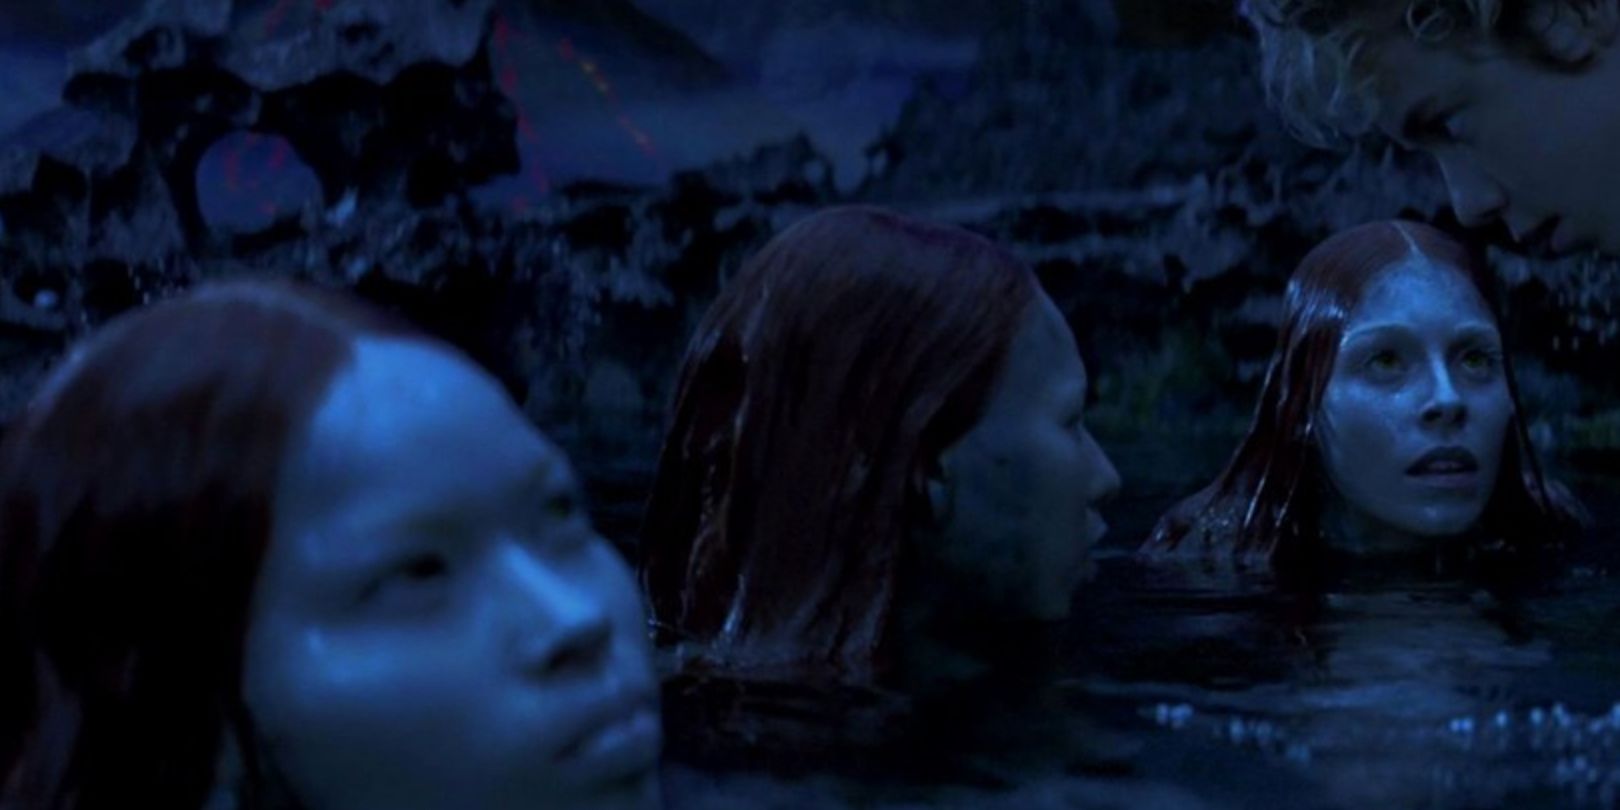 Mermaids with half of their bodies submerged underwater in Peter Pan 2003